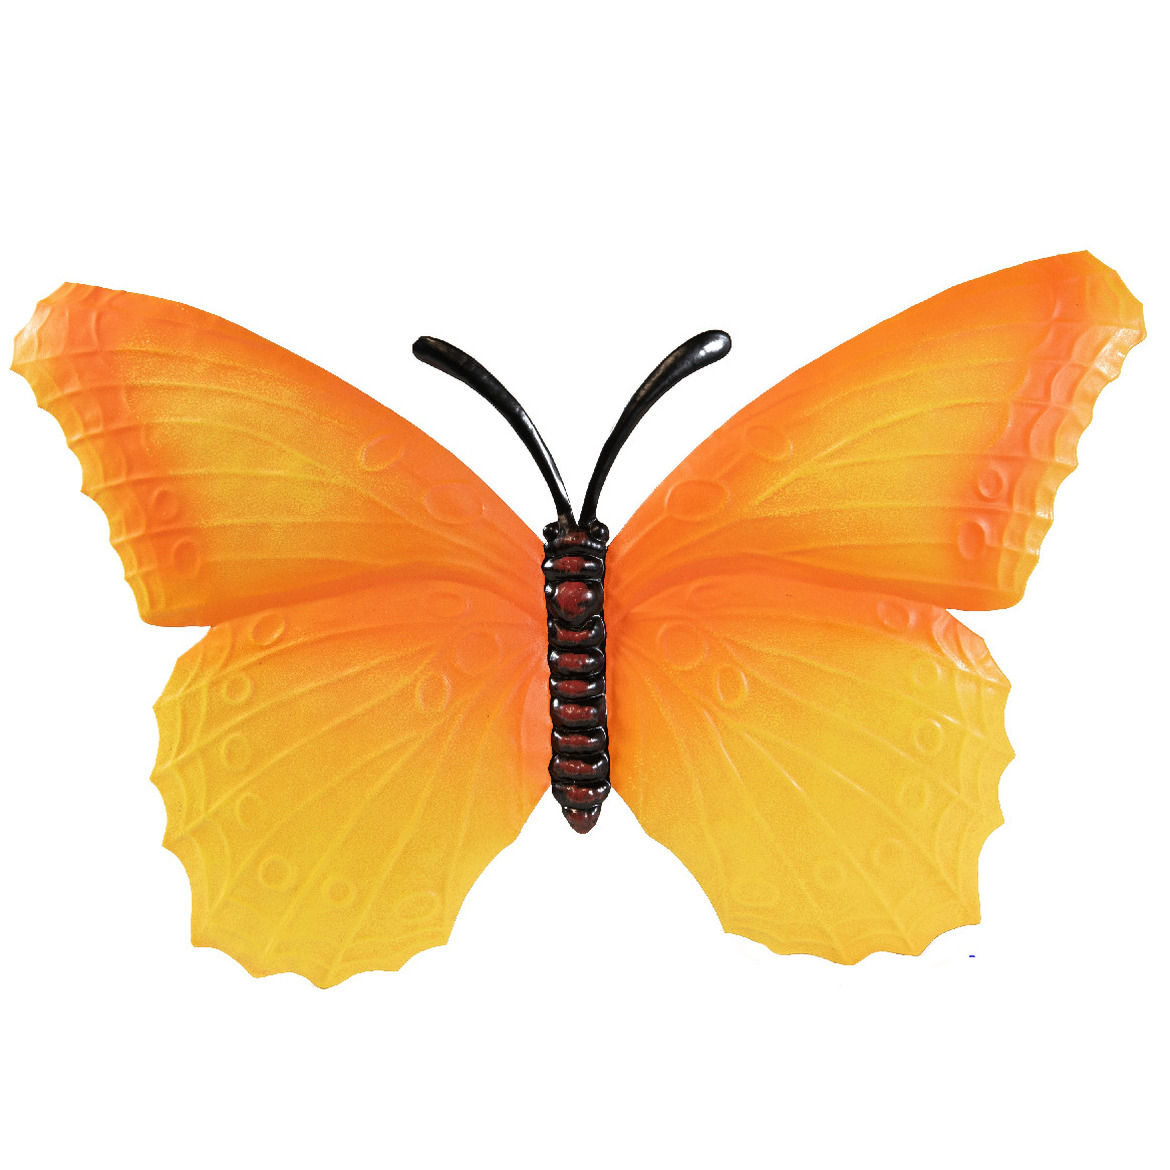 Tuindecoratie muur vlinder van metaal oranje 40 cm